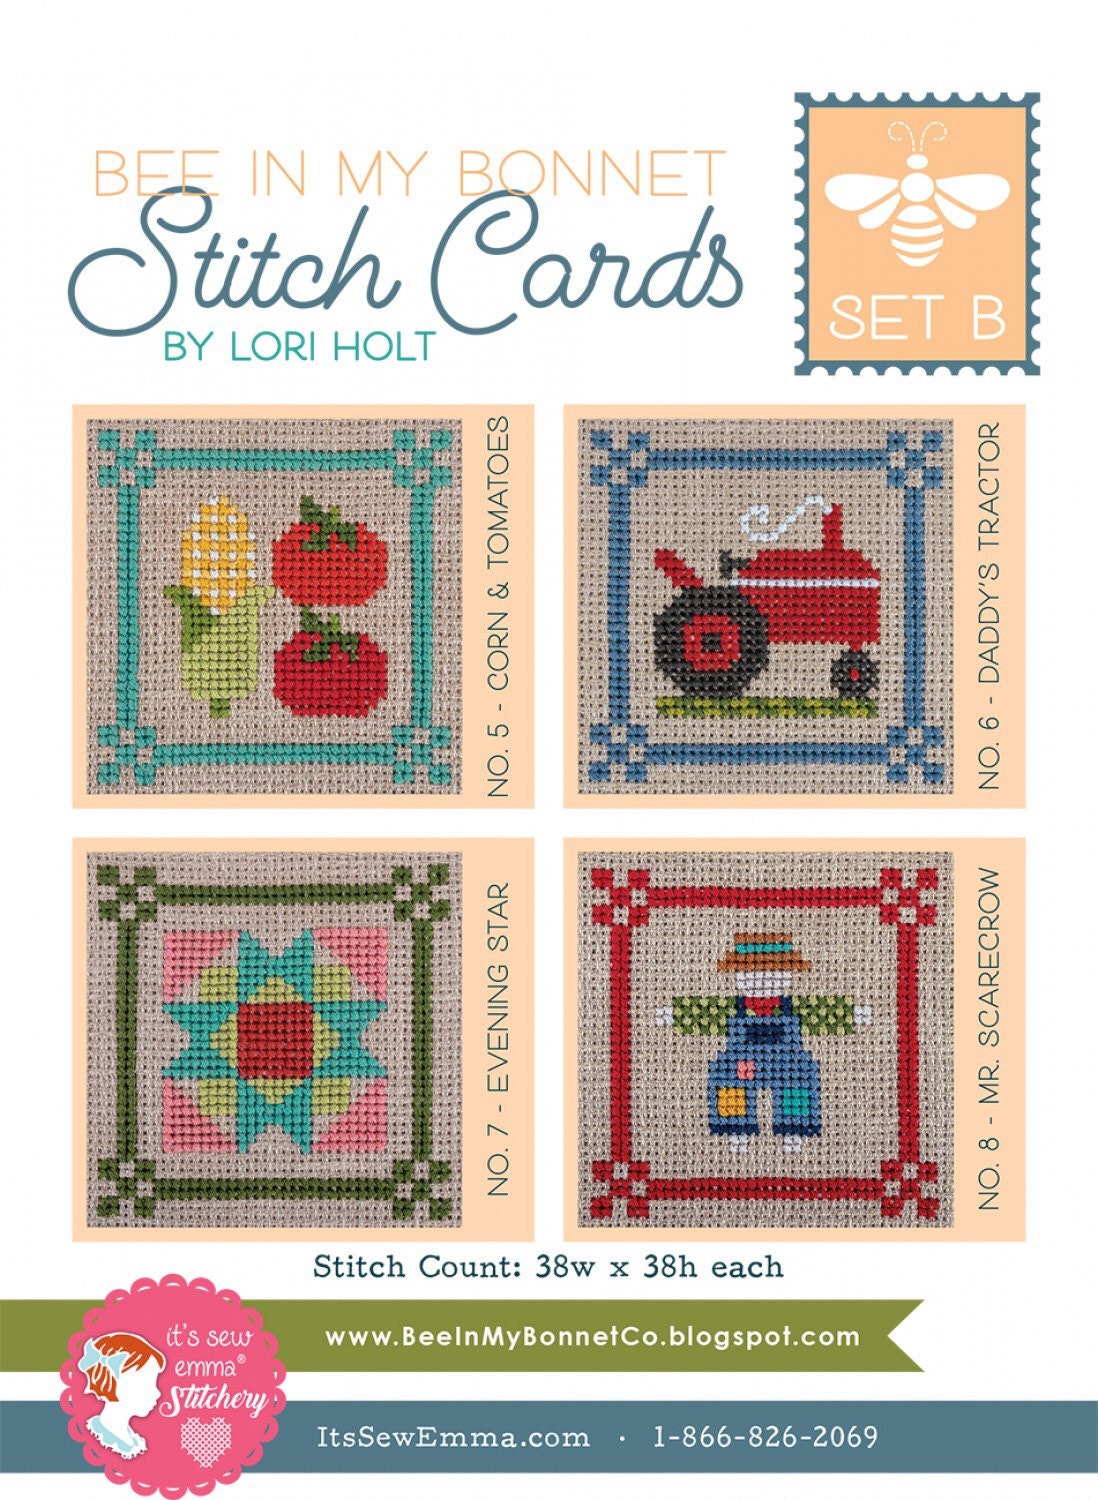 Stitch Cards Set B - Cross Stitch Pattern - It’s Sew Emma - Lori Holt - Bee In My Bonnet